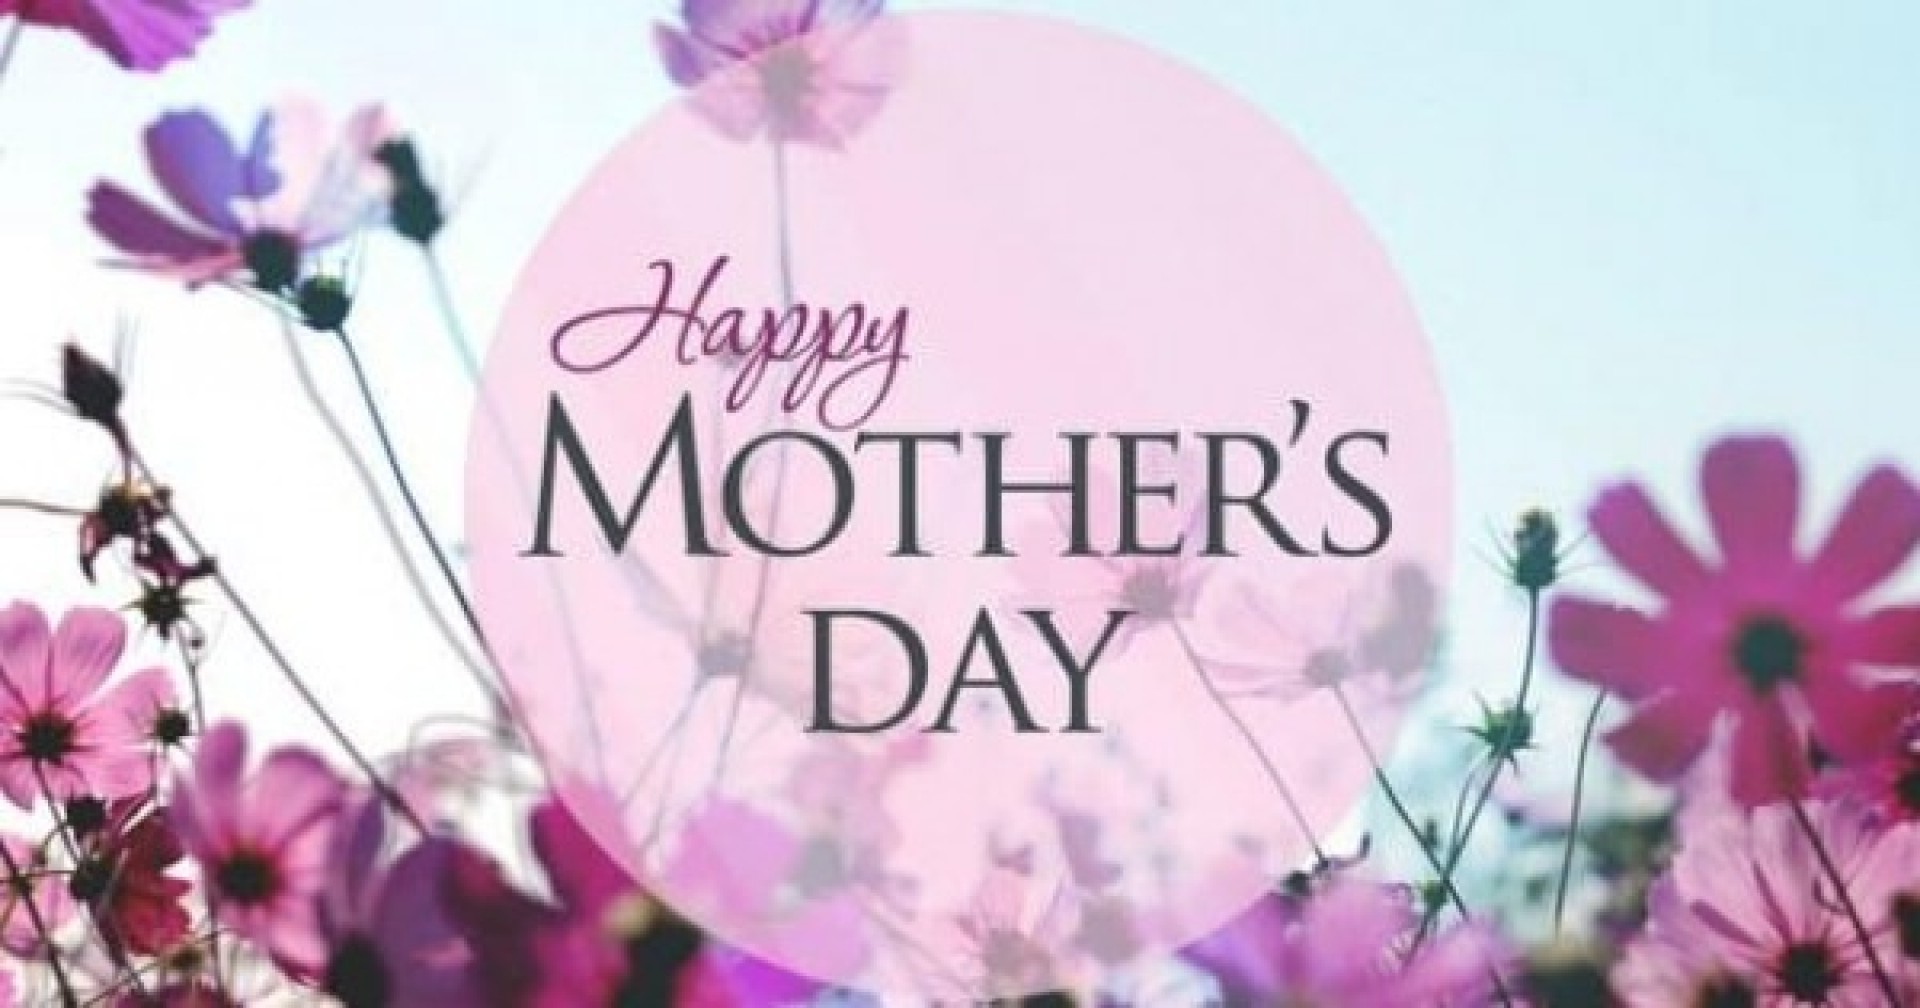 Ý nghĩa đặc biệt trong Ngày của mẹ là gì?